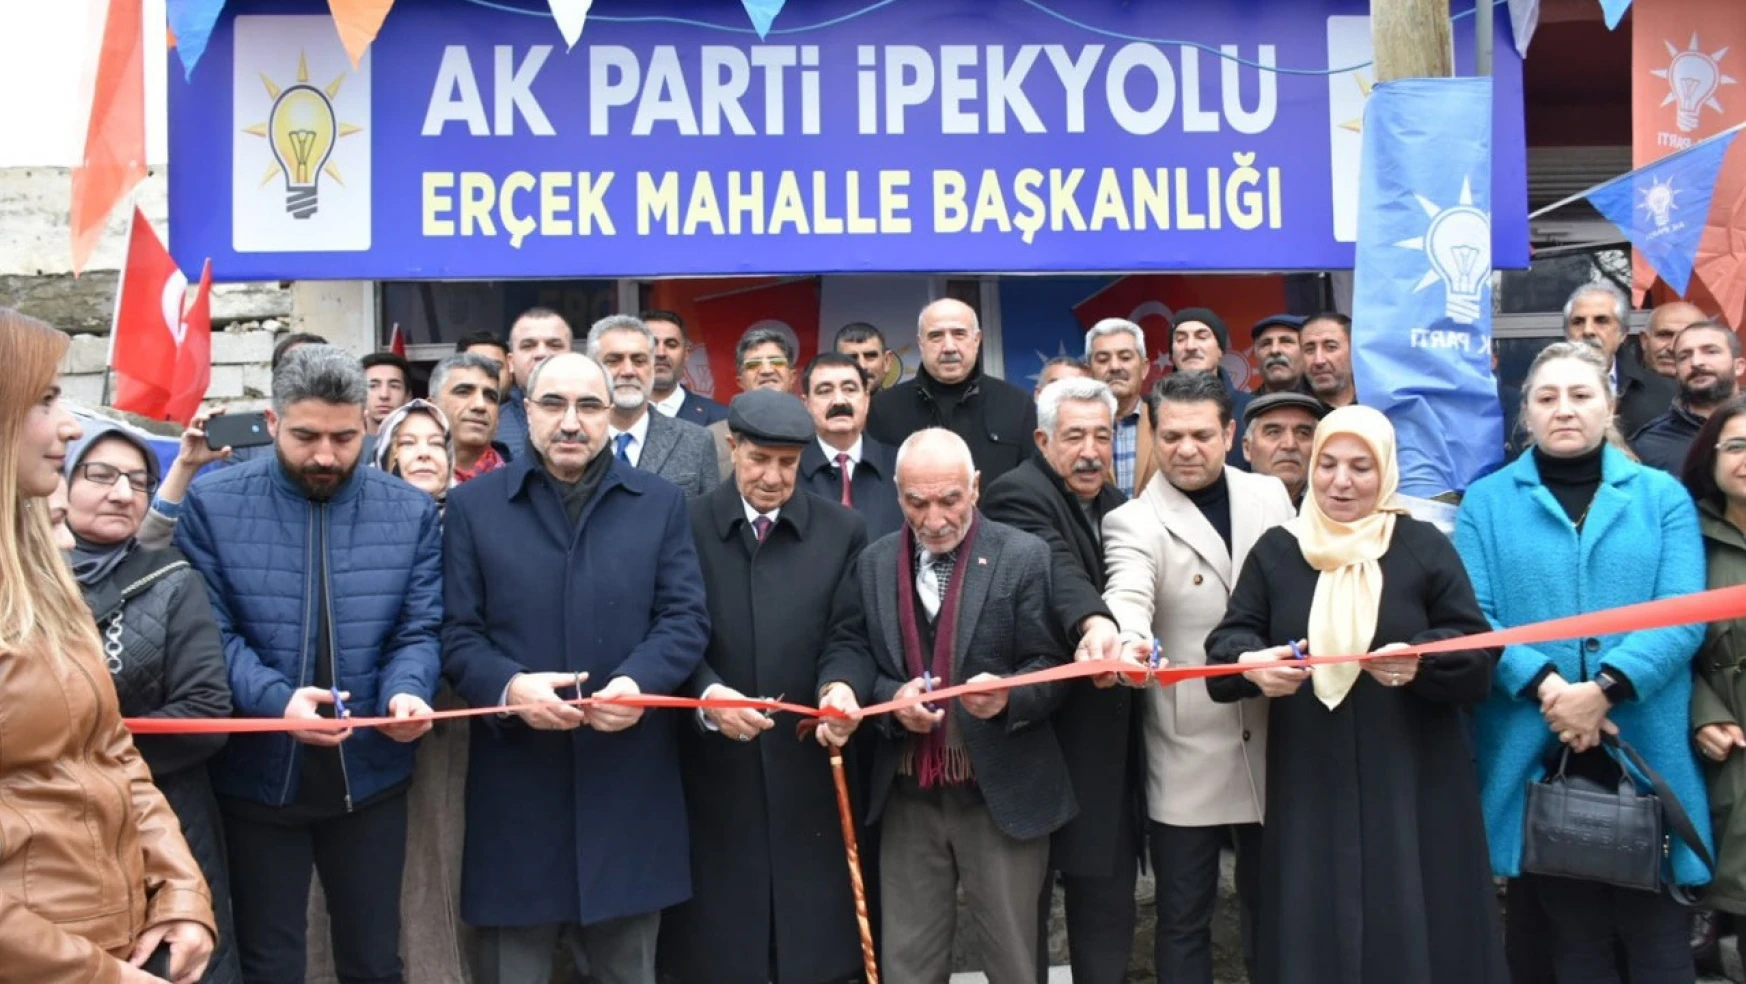 AK Parti, Erçek mahalle başkanlığı ofisi açıldı